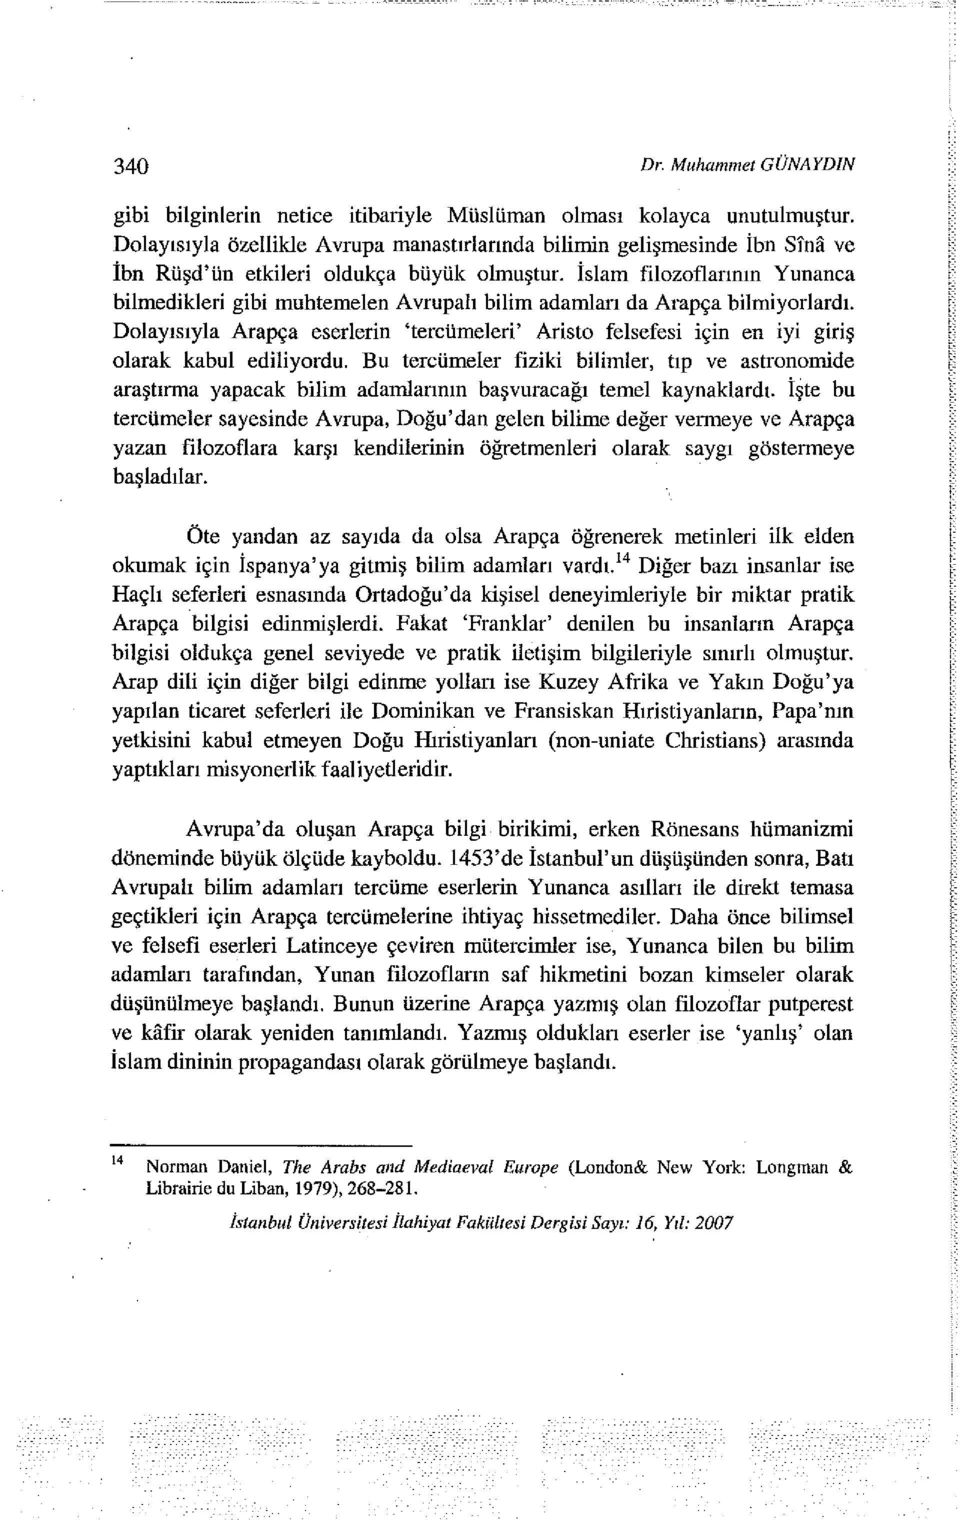 İslam filozoflarının Yunanca bilmedikleri gibi muhtemelen Avrupalı bilim adamları da Arapça bilrniyorlardı.